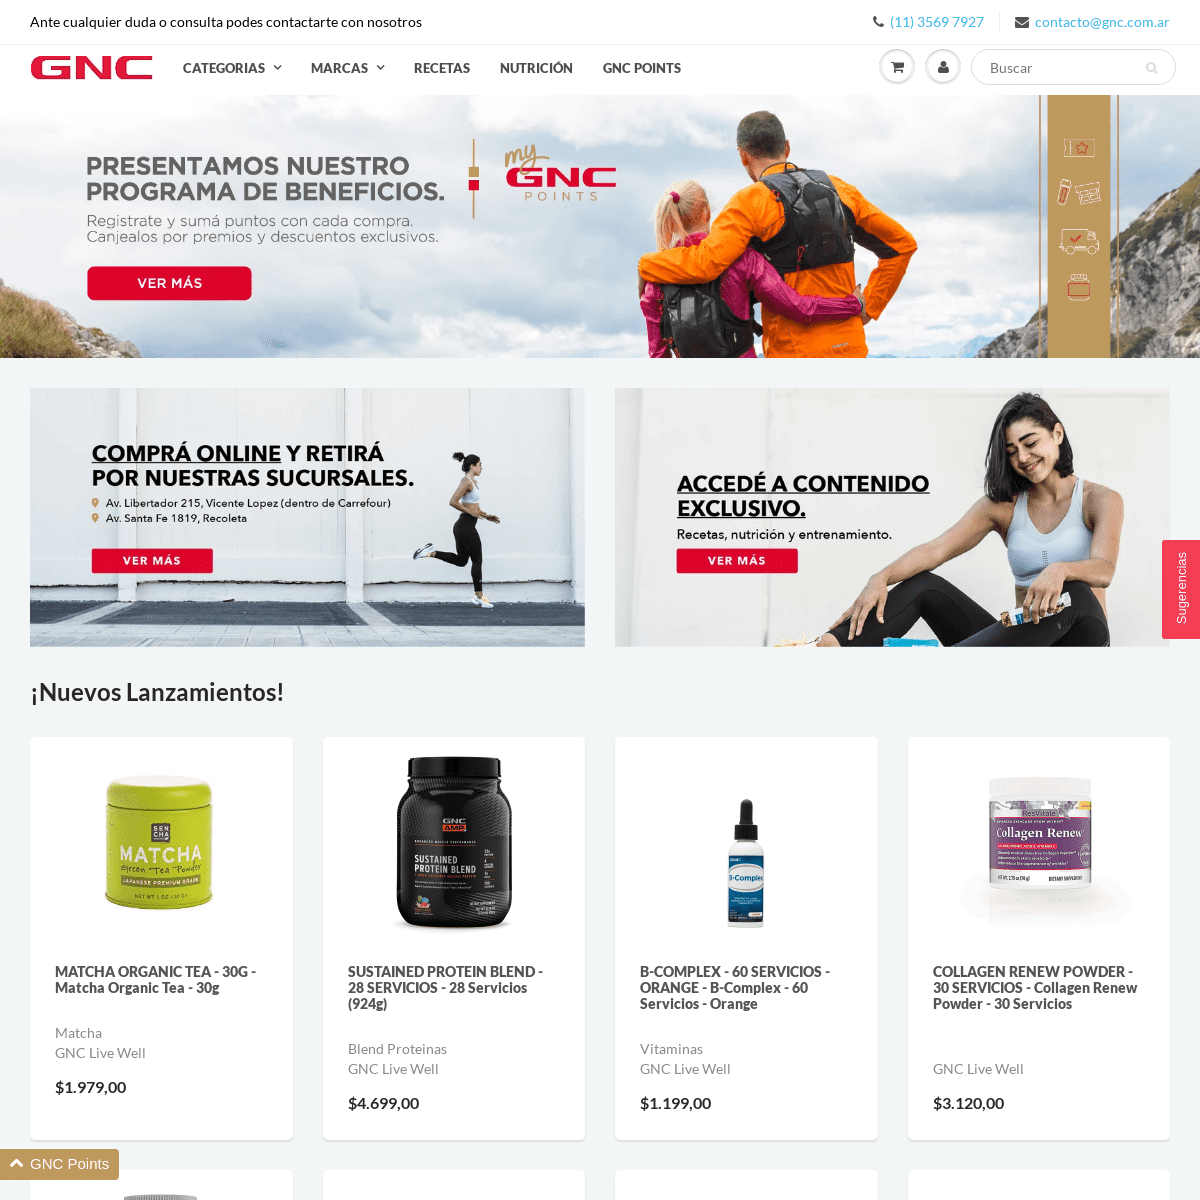 A complete backup of gnc.com.ar